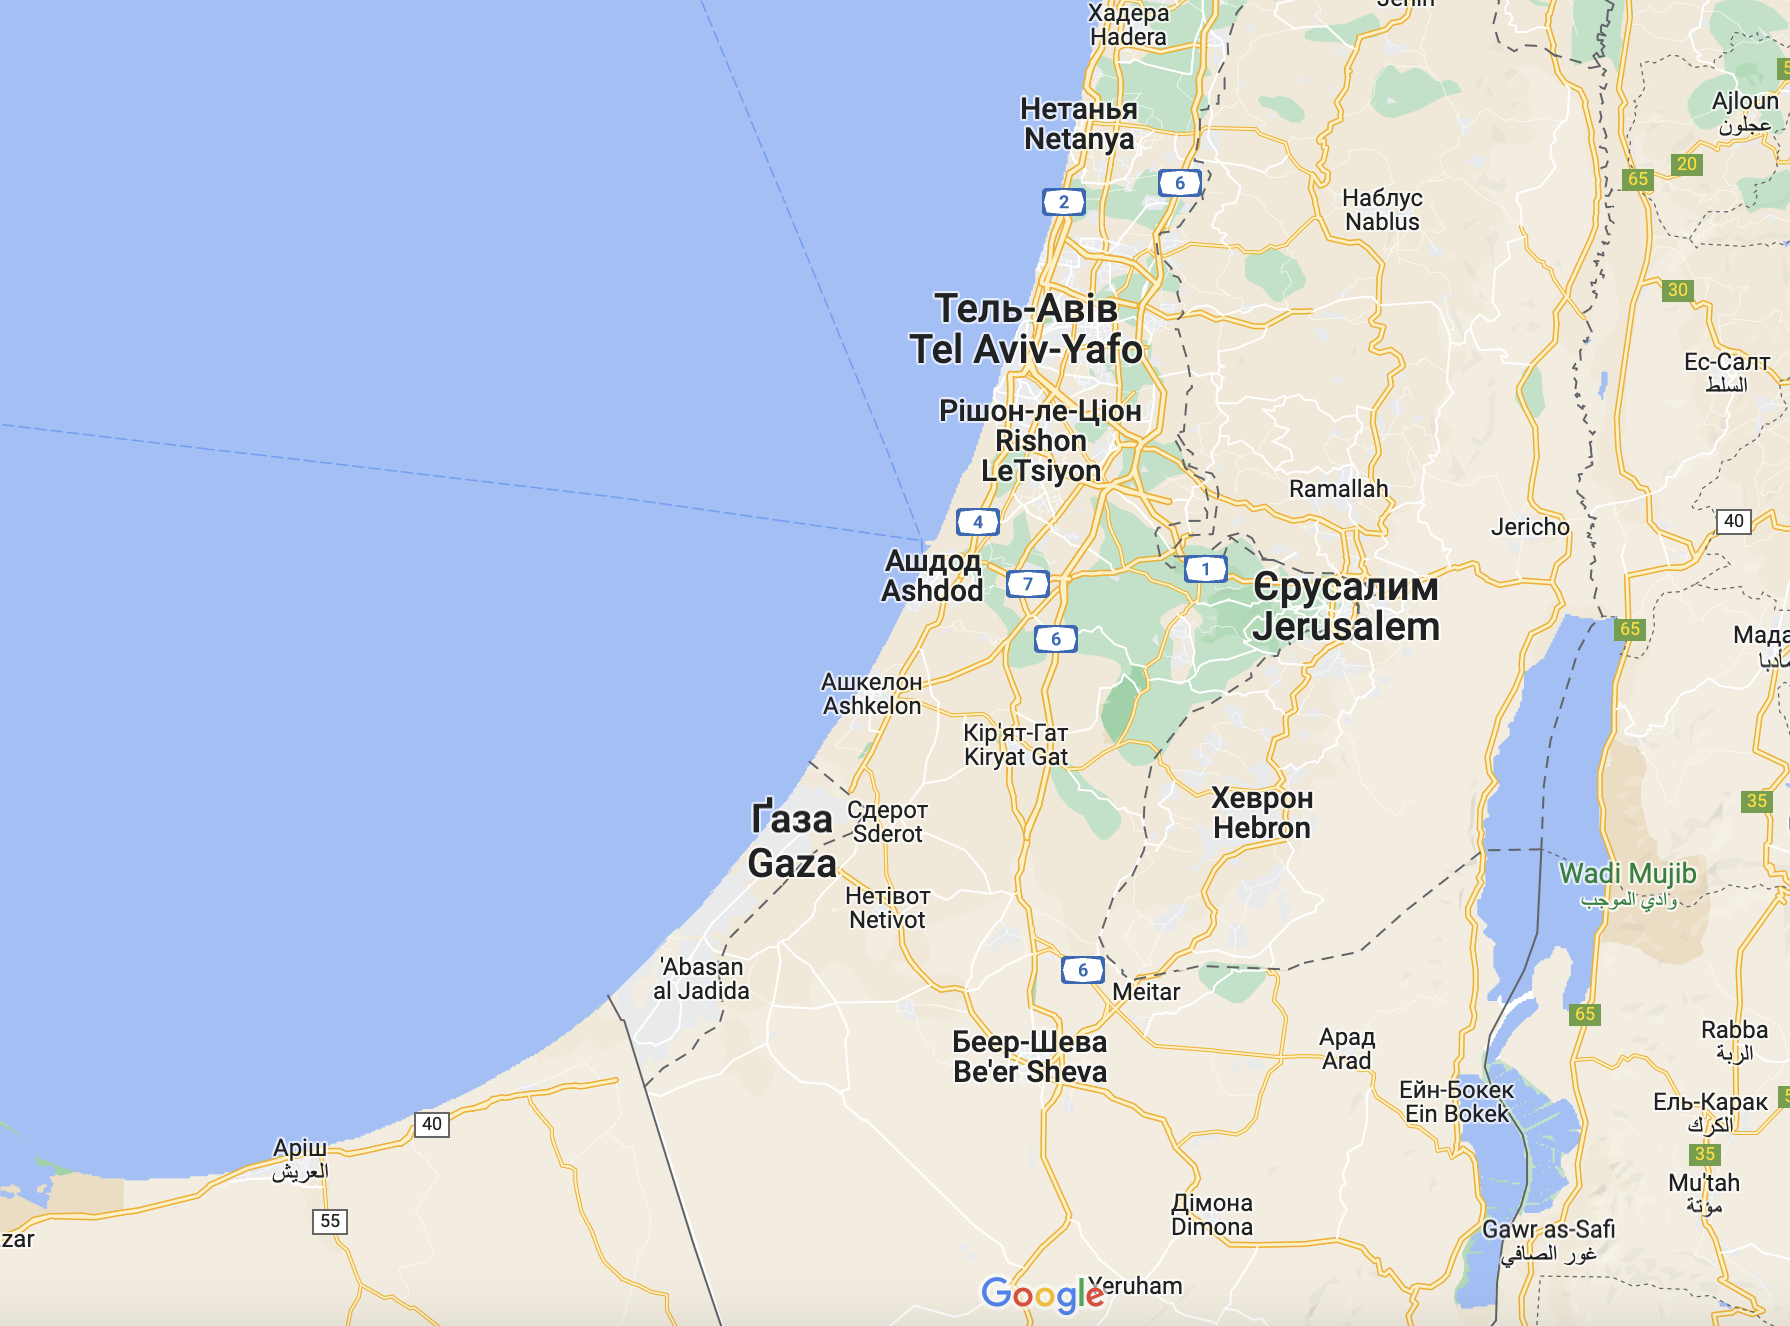 Izrael zawiesza operację lądową w Strefie Gazy - The New York Times